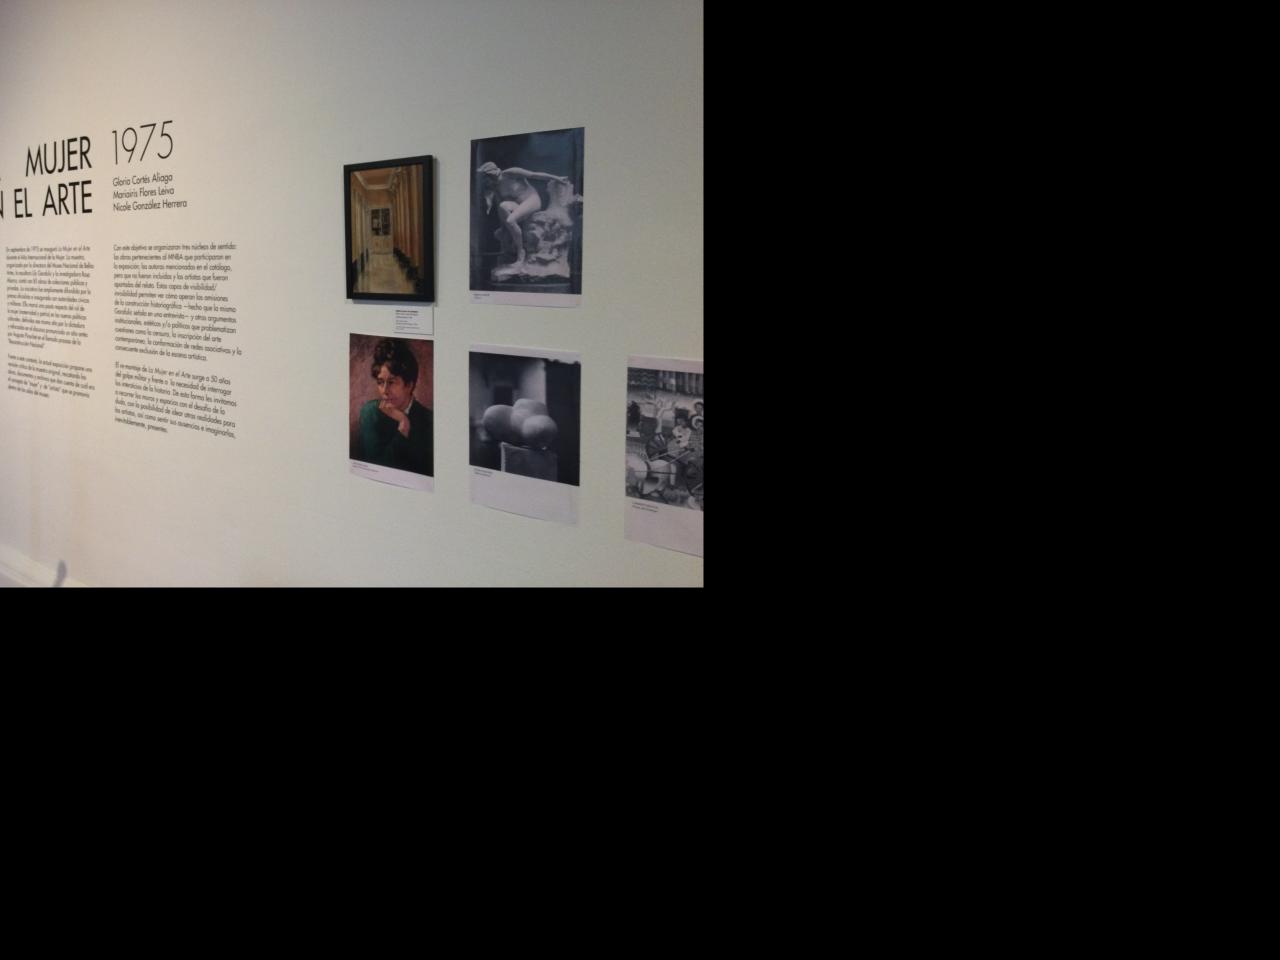 Una pared en la que dice “La mujer en el arte” bajo de esta se encuentra una breve descripción de lo que trata la muestra, al lado derecho del texto se observan 4 cuadros